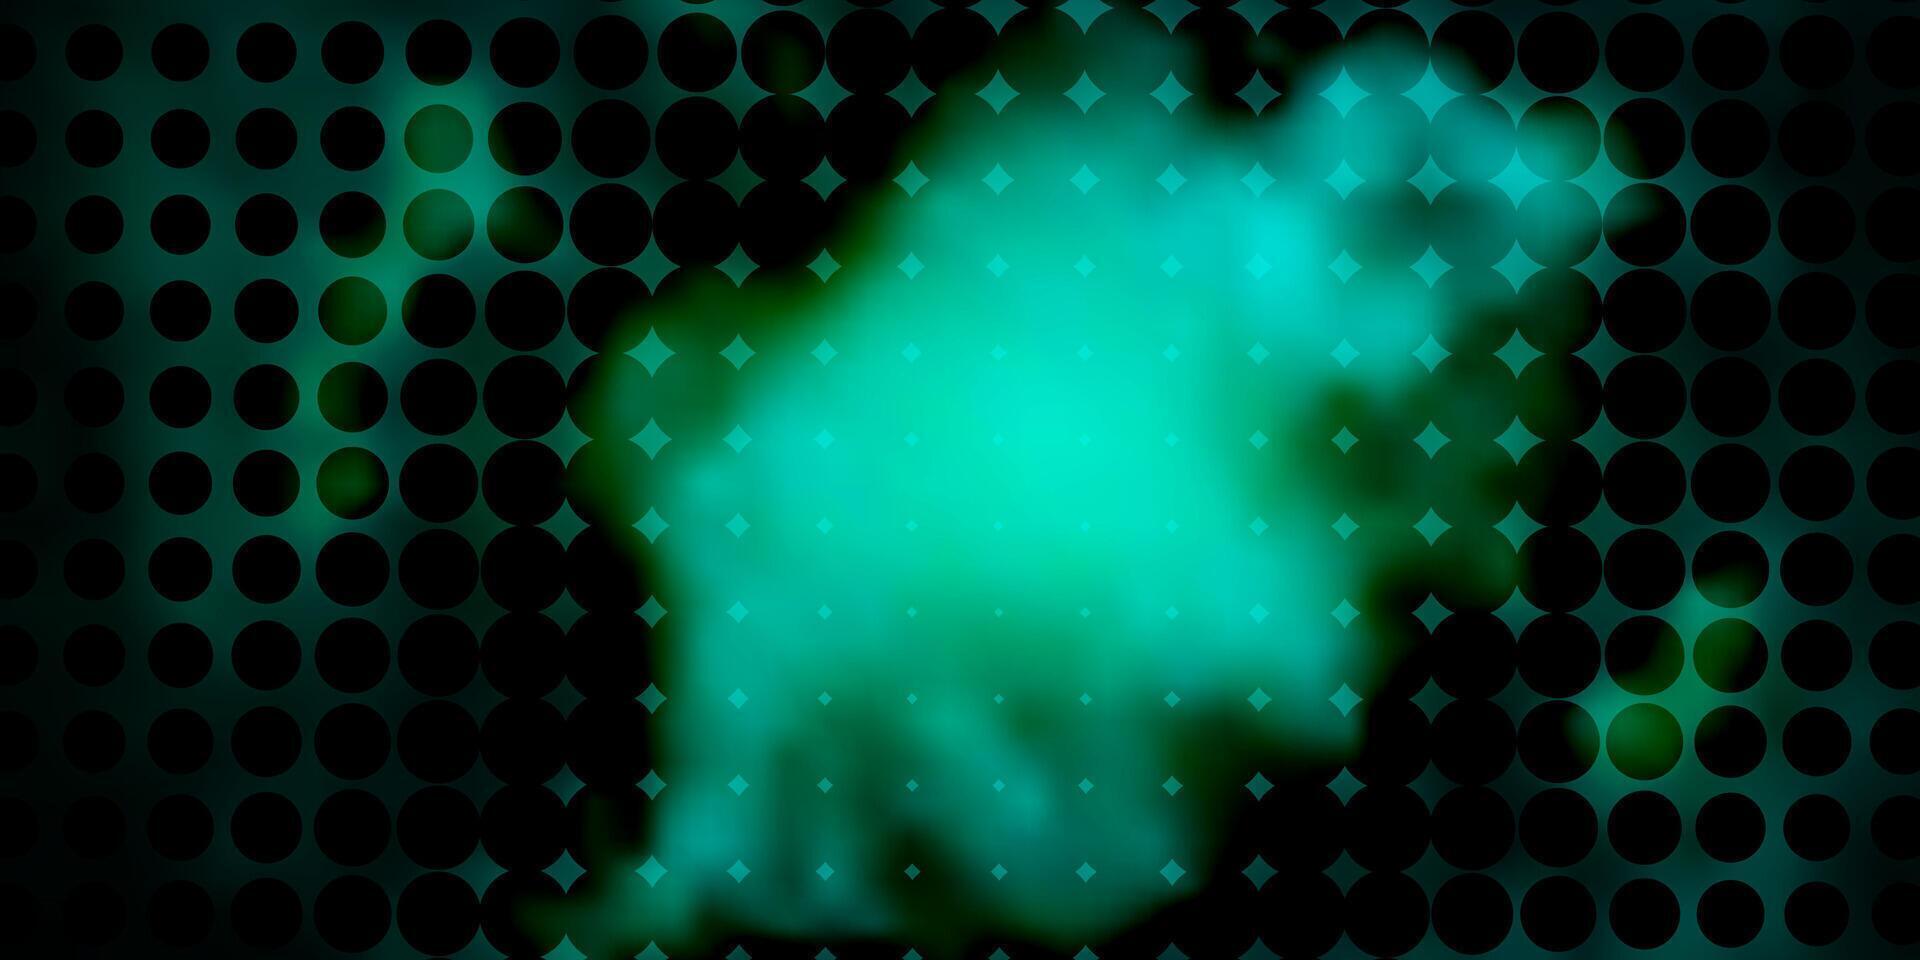 donker blauw, groen patroon met bollen. vector